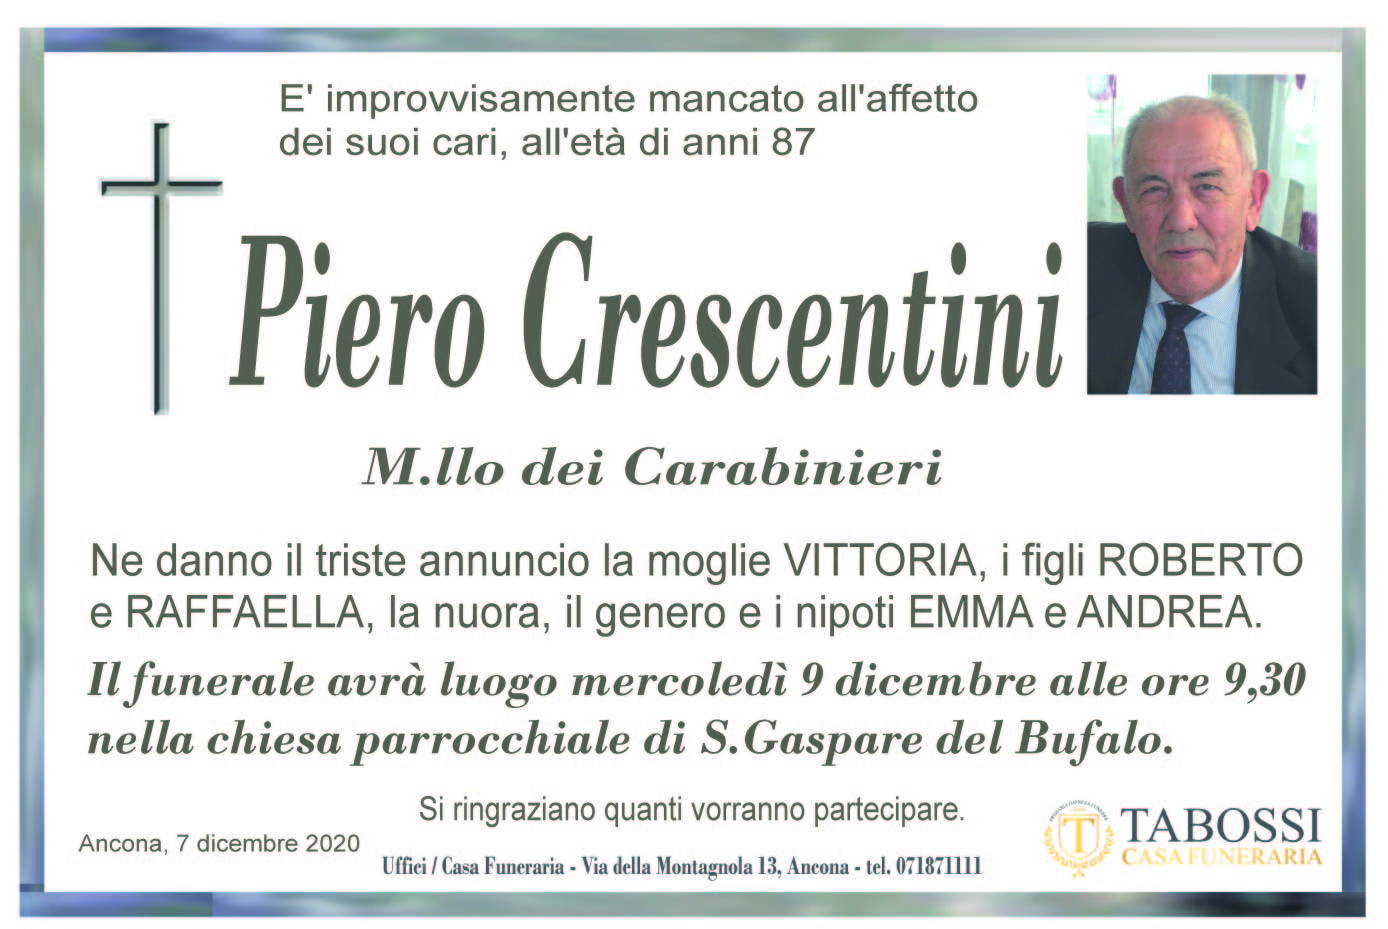 Piero Crescentini